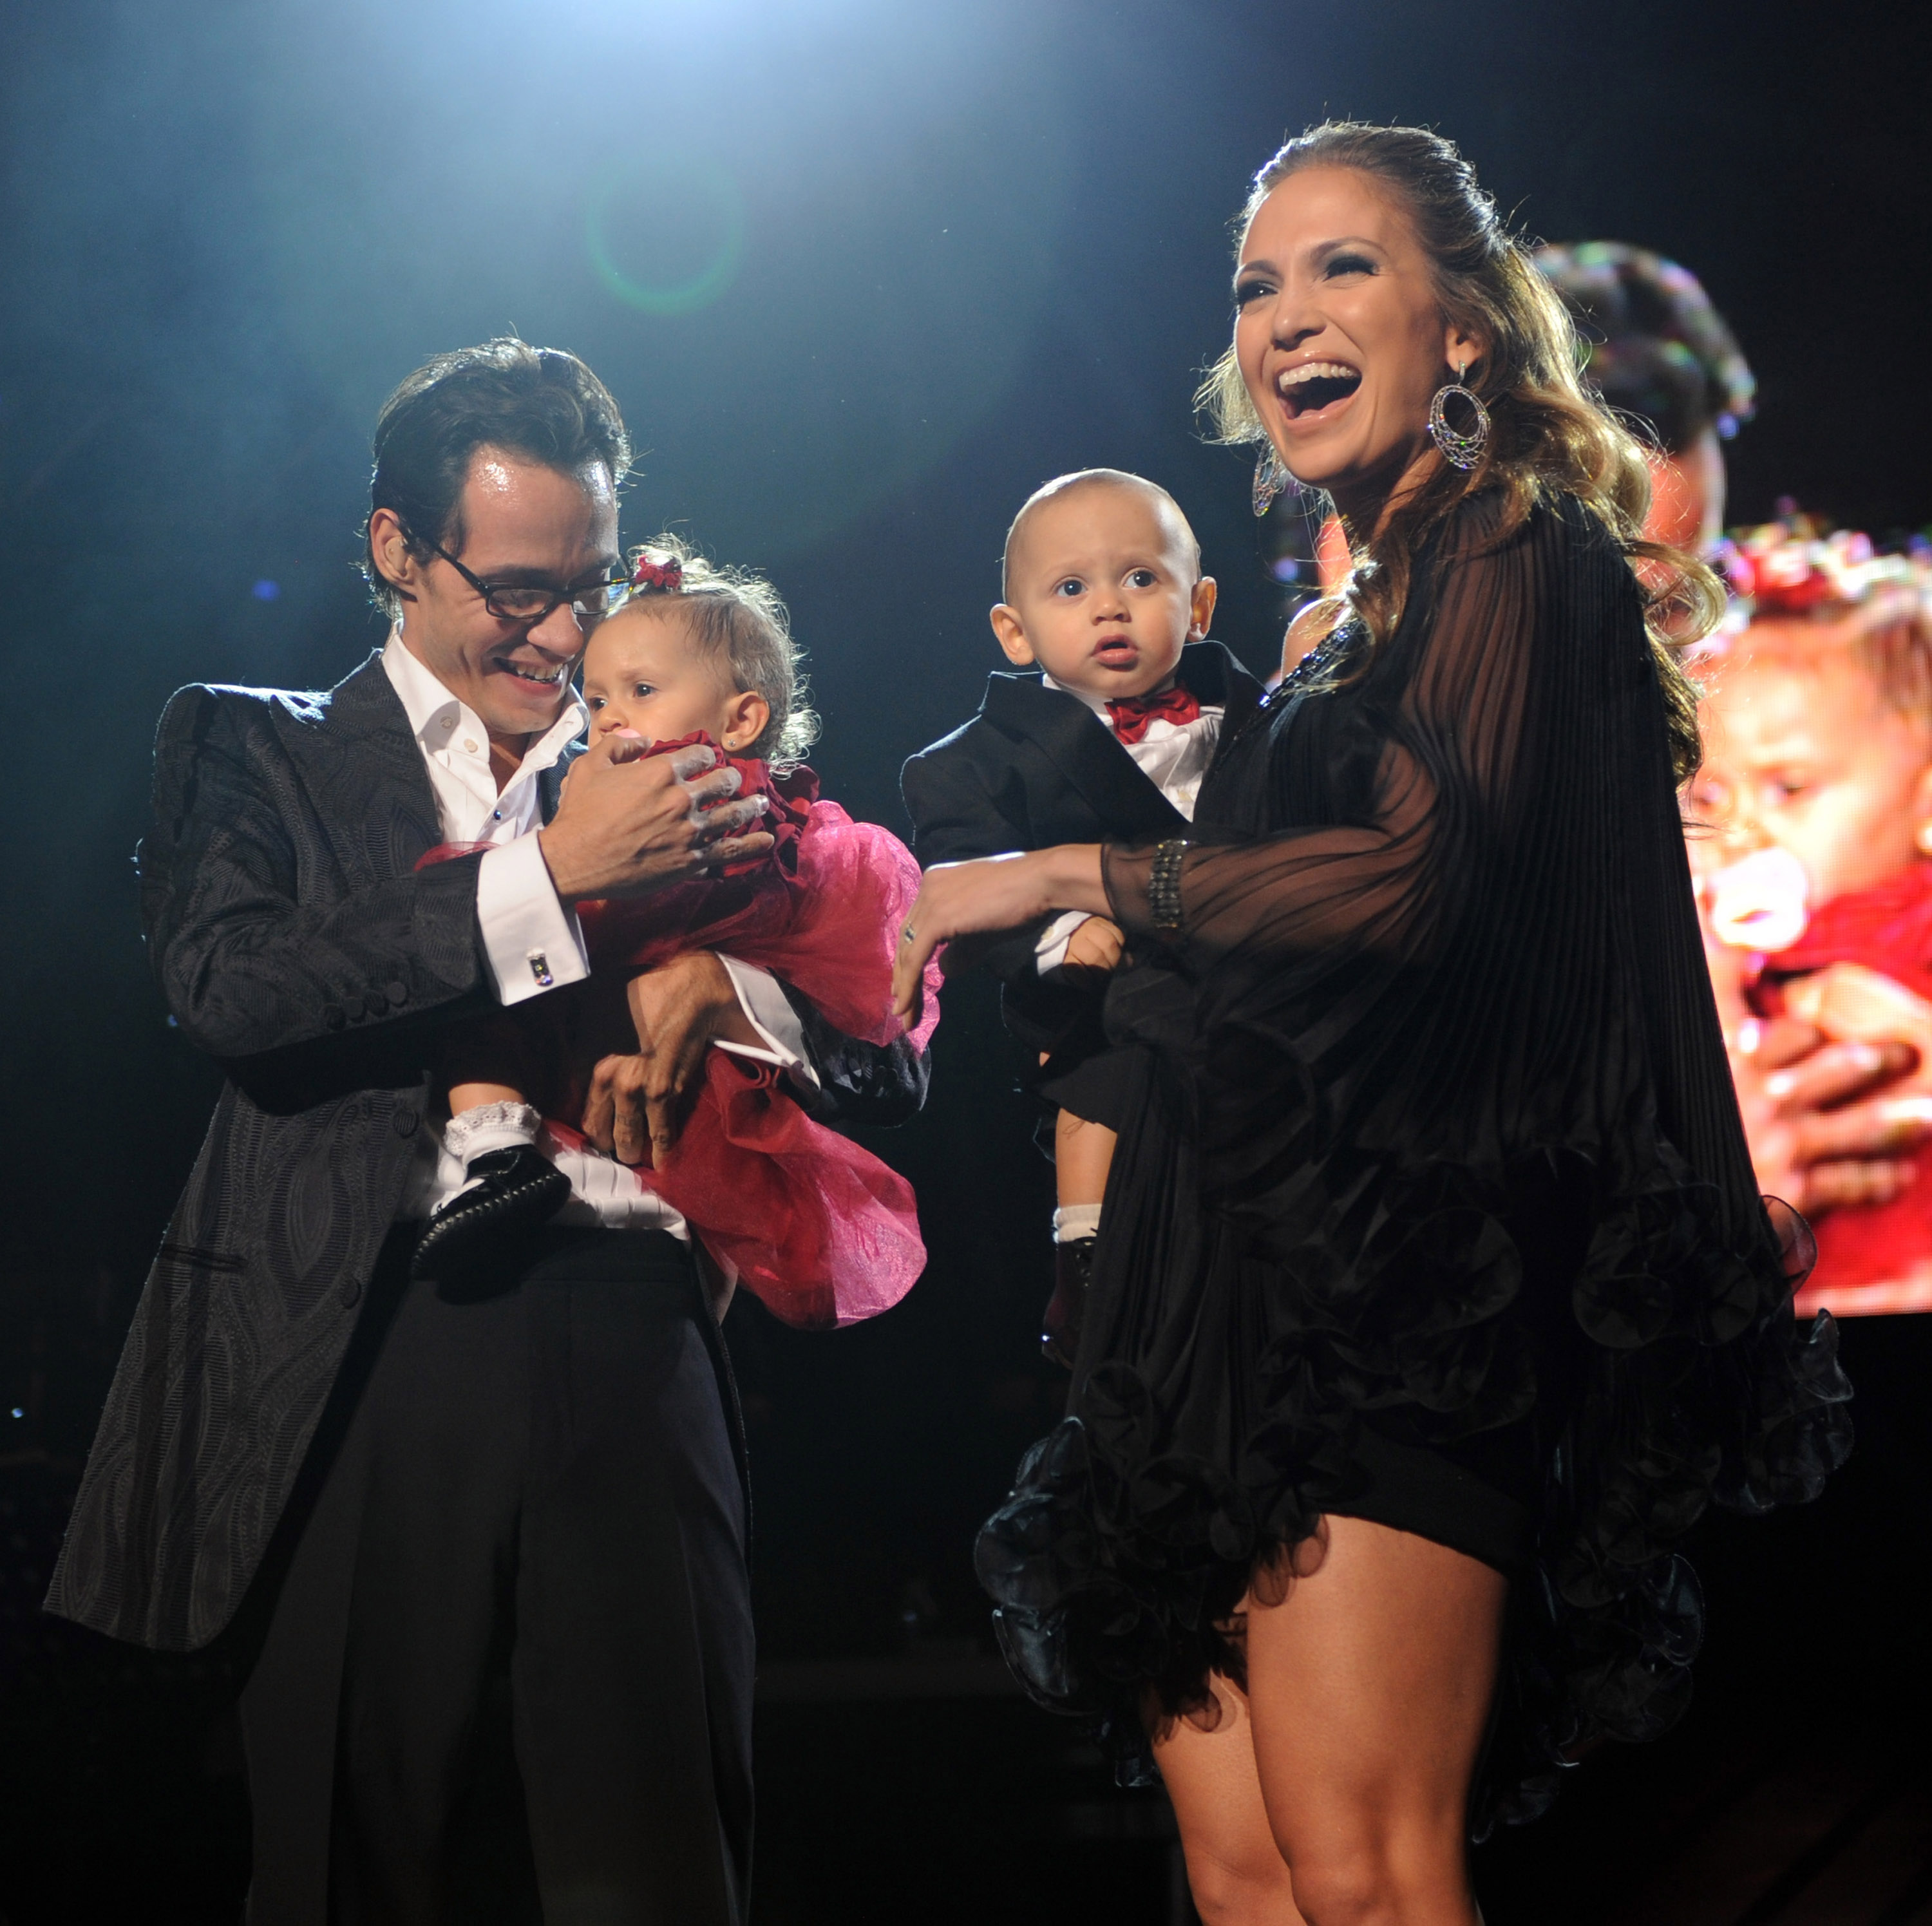 Marc Anthony et Jennifer Lopez avec leurs enfants Max et Emme à New York en 2009 | Source : Getty Images